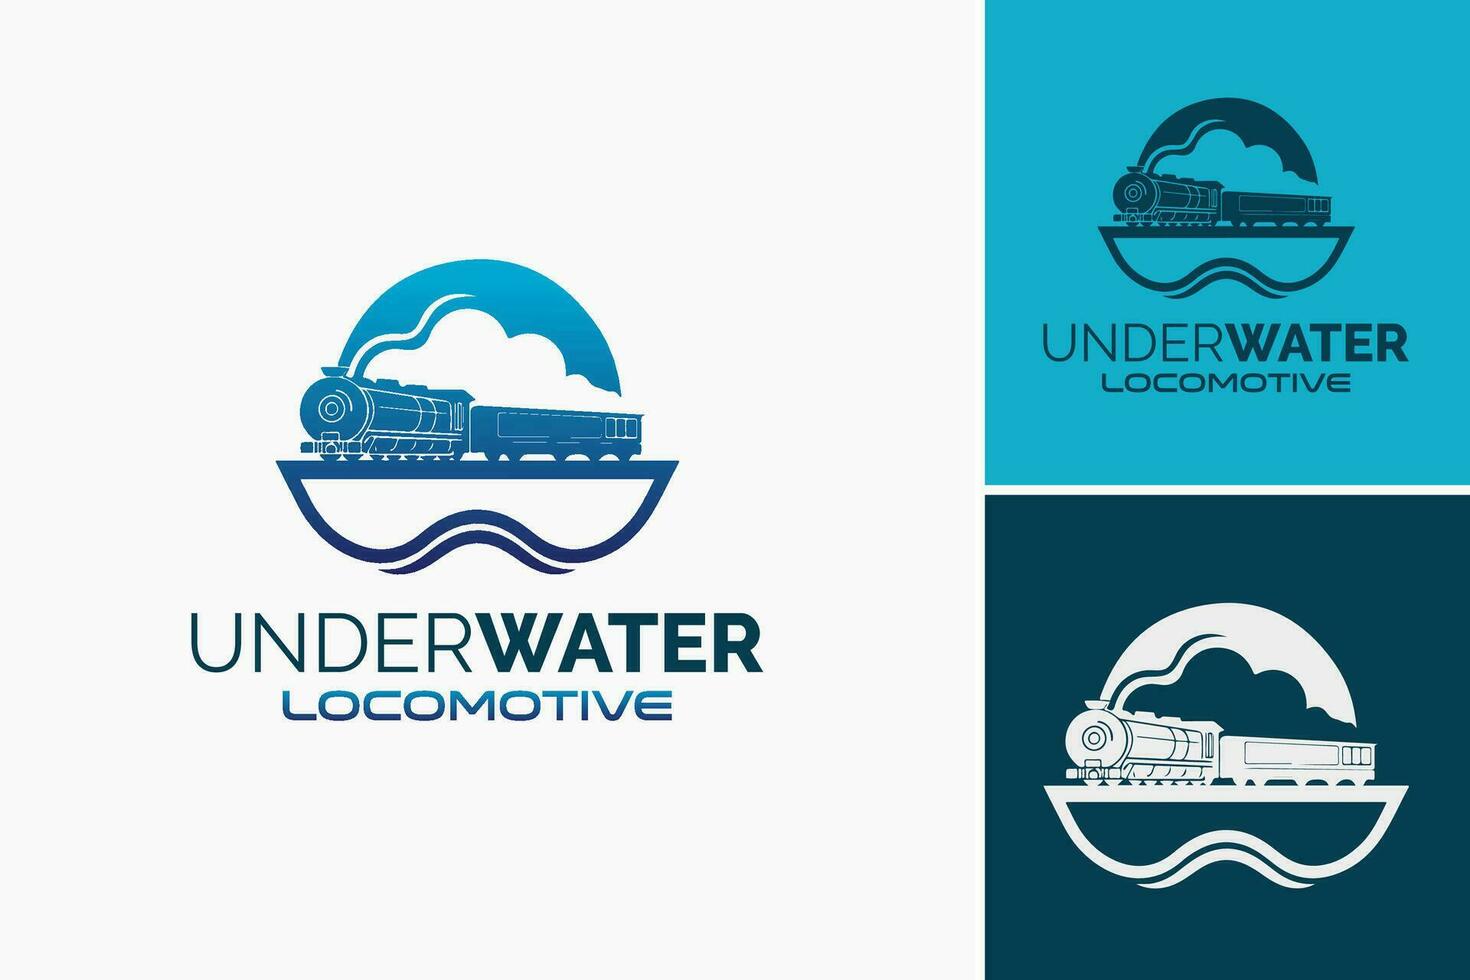 a logotipo para embaixo da agua retrata uma único e visualmente atraente logotipo Projeto especificamente criada para negócios ou organizações relacionado para água Atividades, marinho vida, ou aquático Serviços. vetor